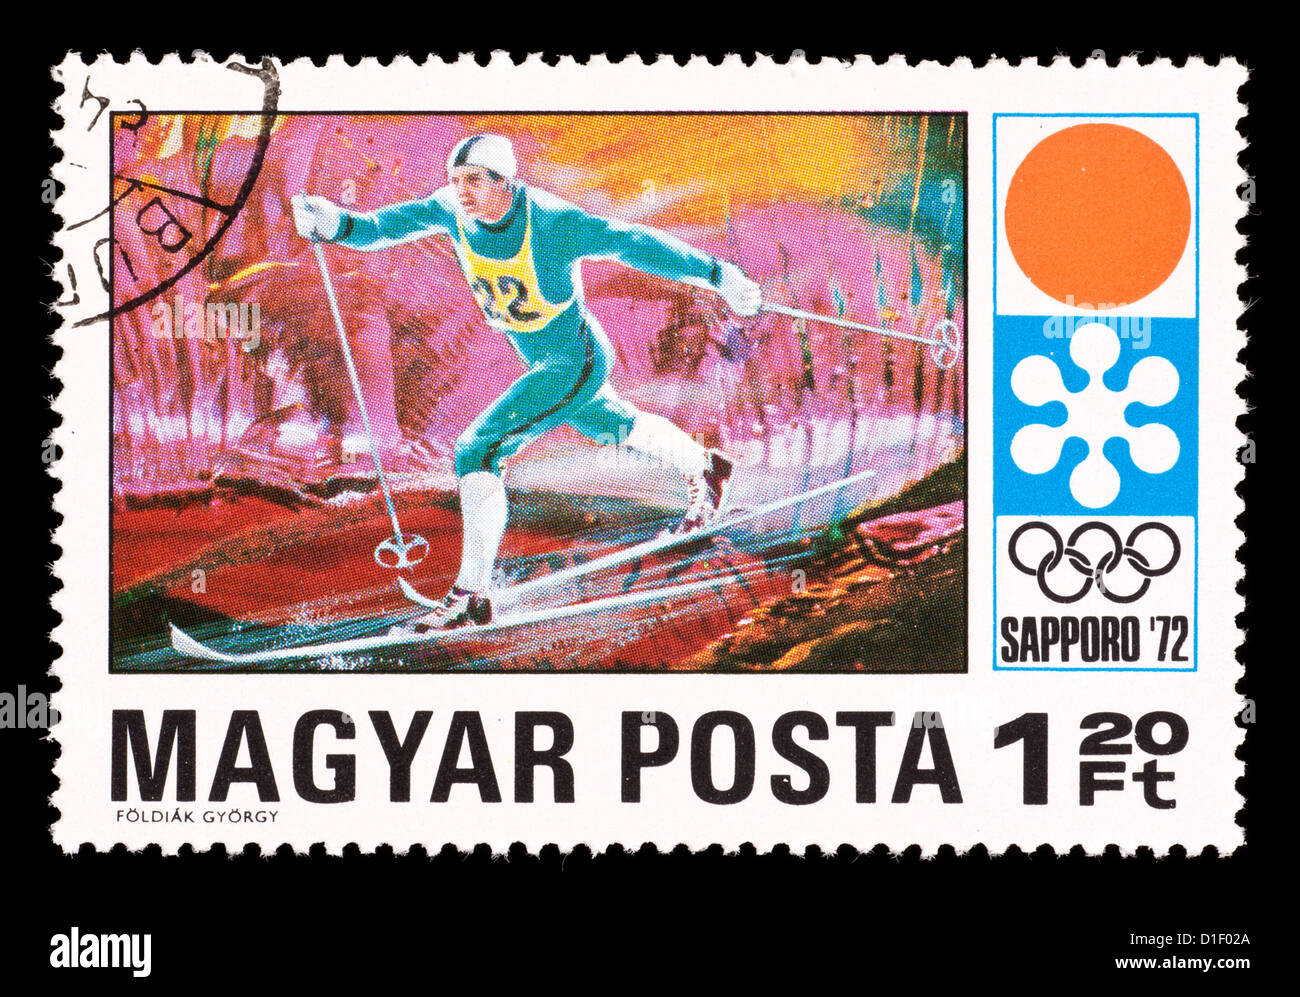 Francobollo da Ungheria raffigurante un cross country sciatore, rilasciati per le Olimpiadi Invernali del 1972 a Sapporo, Giappone. Foto Stock